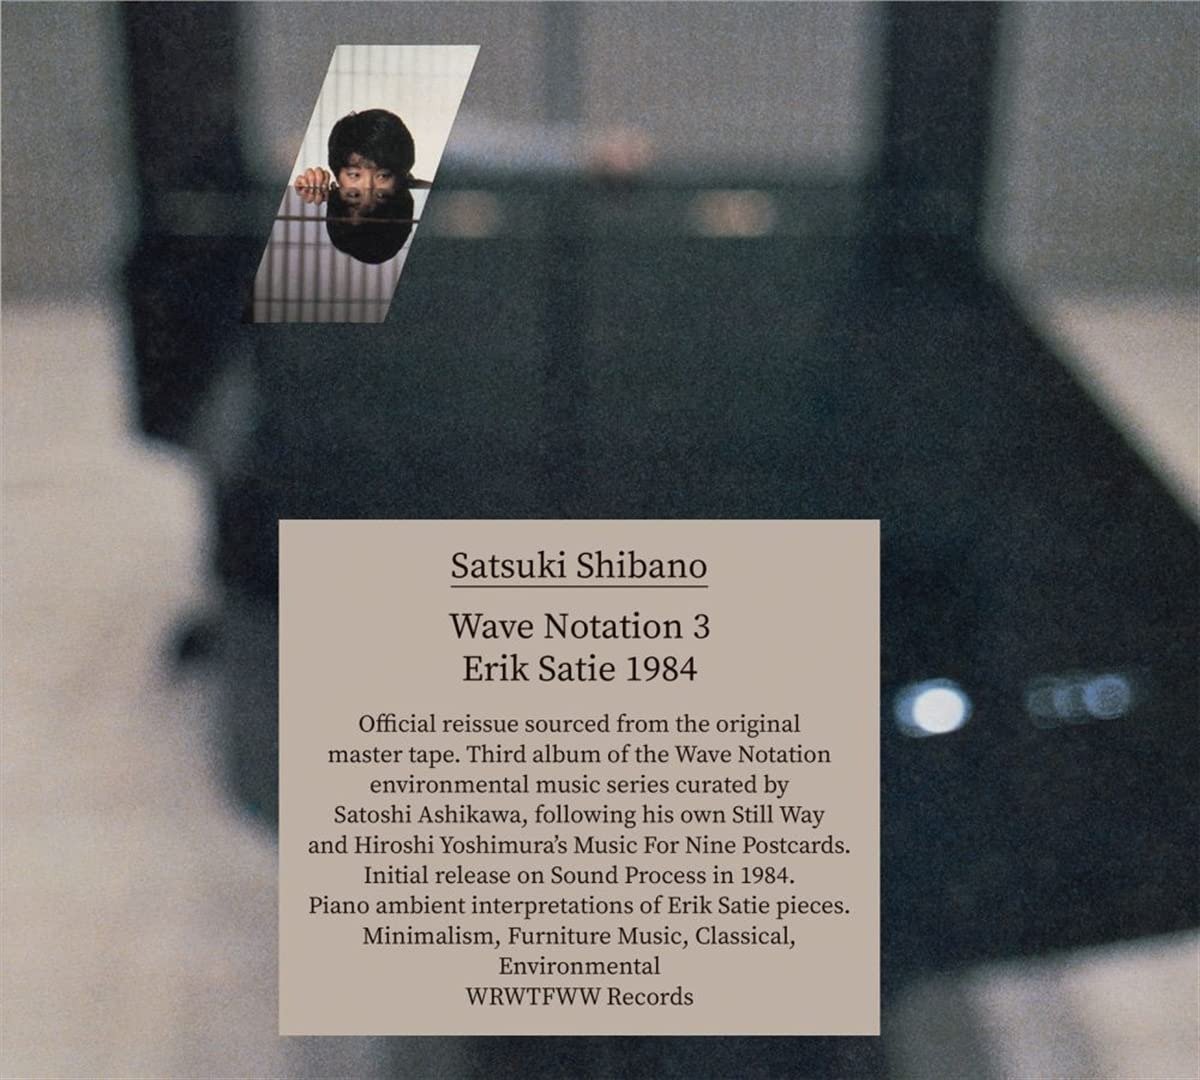 CD Shop - SHIBANO, SATSUKI WAVE NOTATION 3: ERIK SATIE 1984